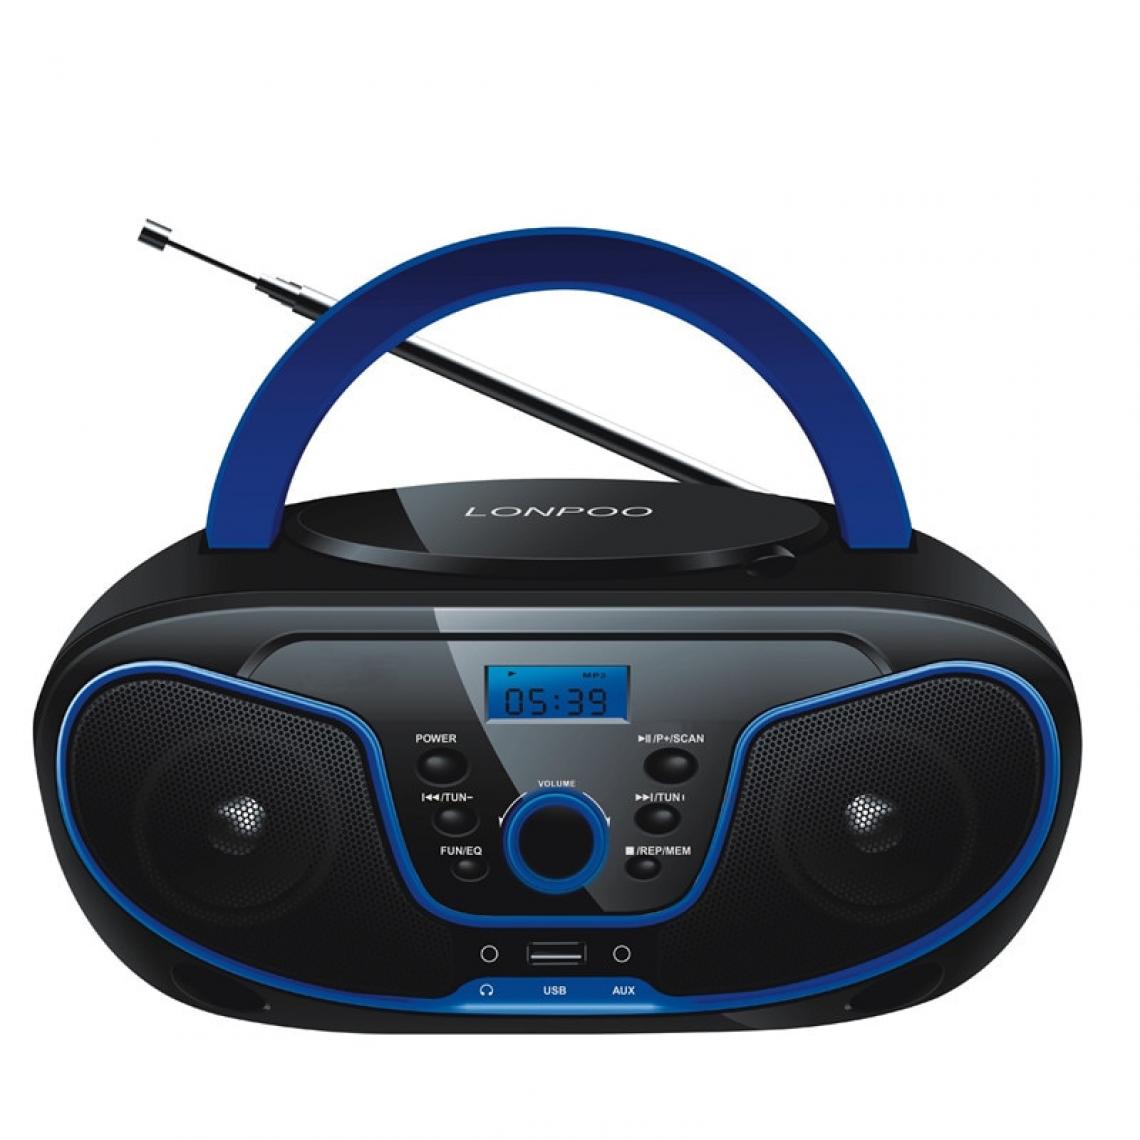 Universal - Haut-parleurs Mini lecteur CD portable haut-parleur Bluetooth MP3 USB FM radio casque sans fil haut-parleur stéréo auxiliaire | Haut-Parleur portable (noir) - Enceinte PC